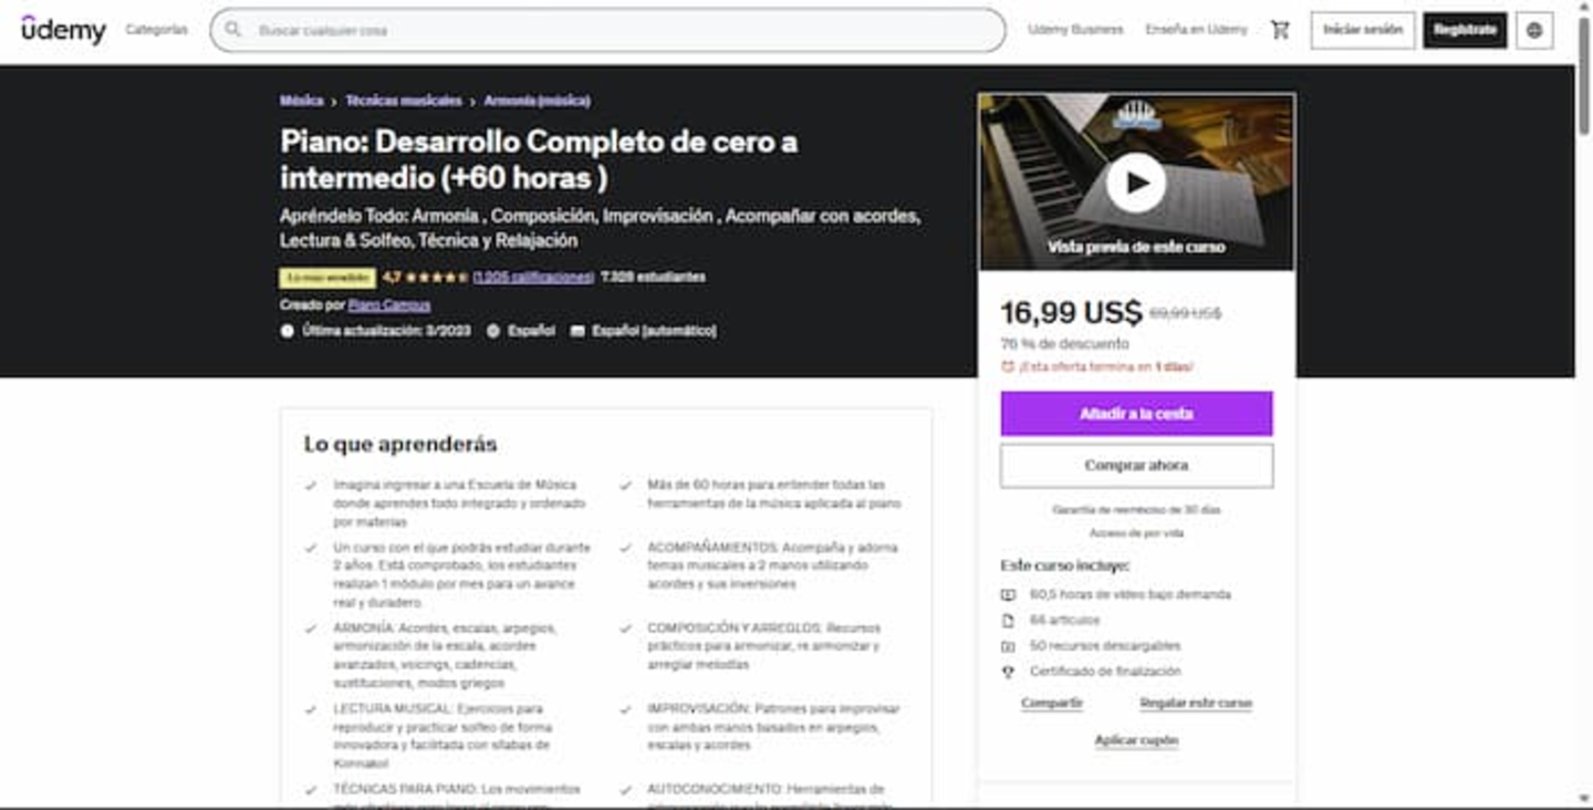 Este curso en Udemy te ofrece más de 60 horas de contenido que puedes utilizar para aprender a tocar el piano de forma sencilla